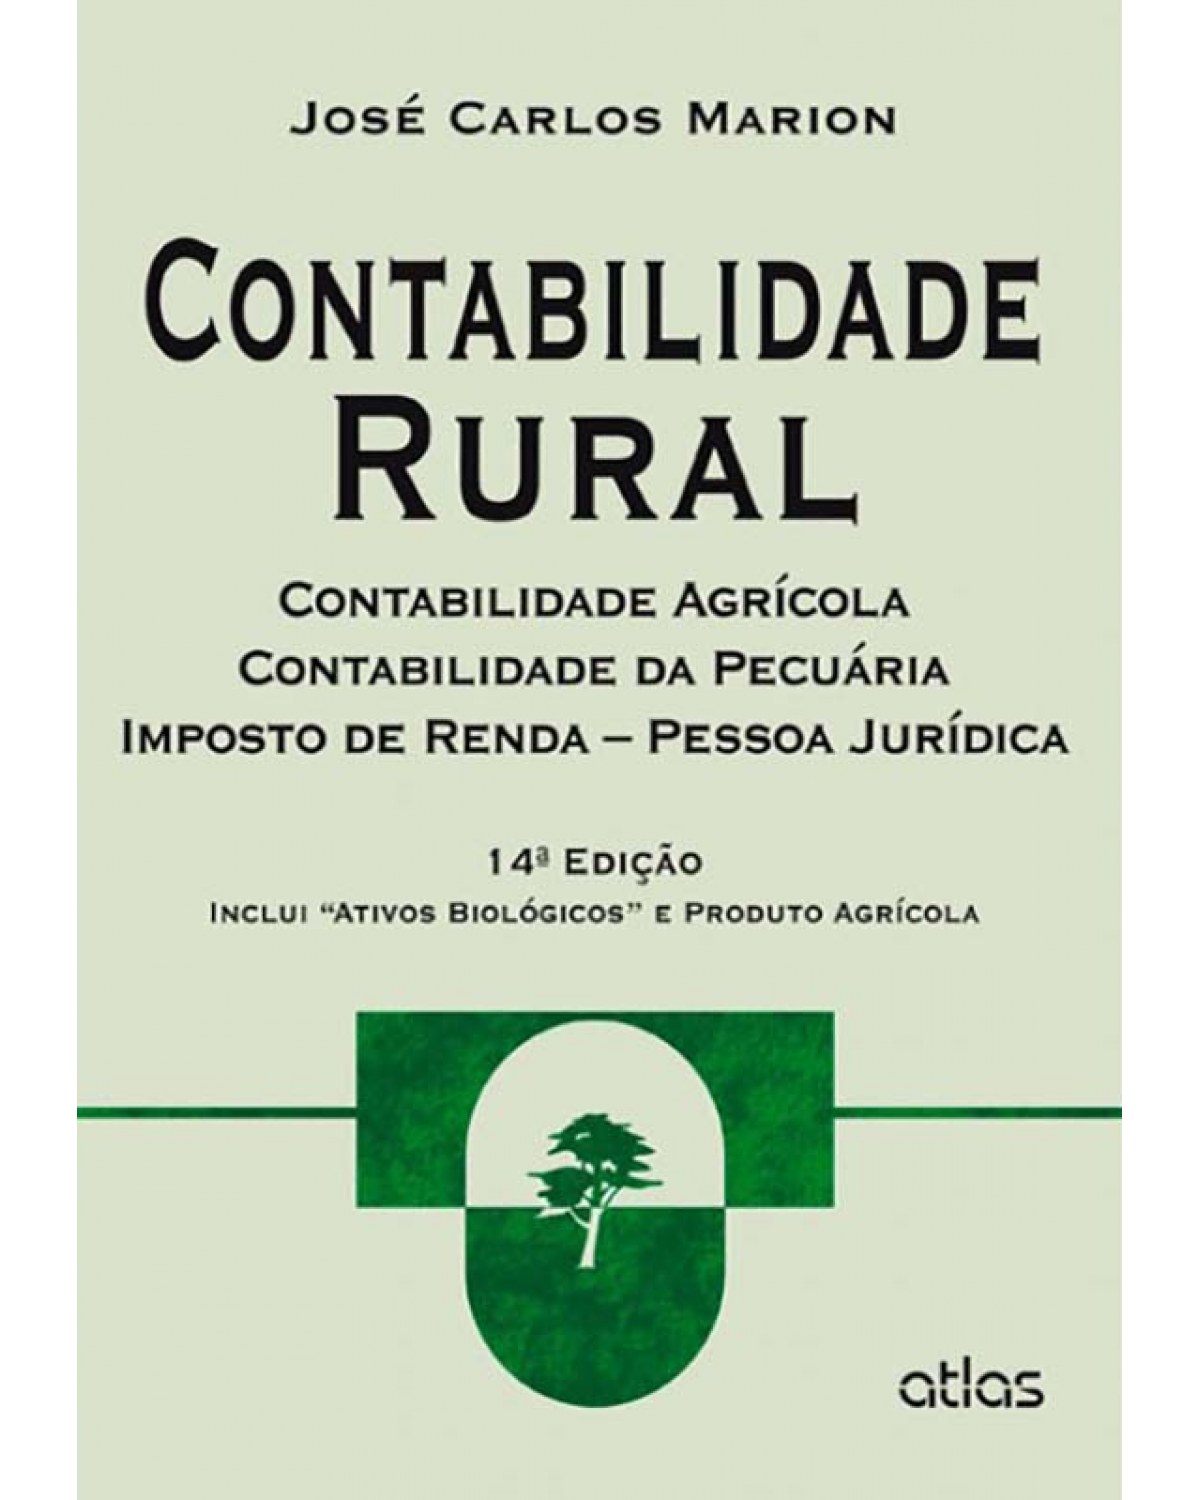 Contabilidade rural - Contabilidade agrícola, contabilidade da pecuária e imposto de renda - Pessoa jurídica - 14ª Edição | 2014